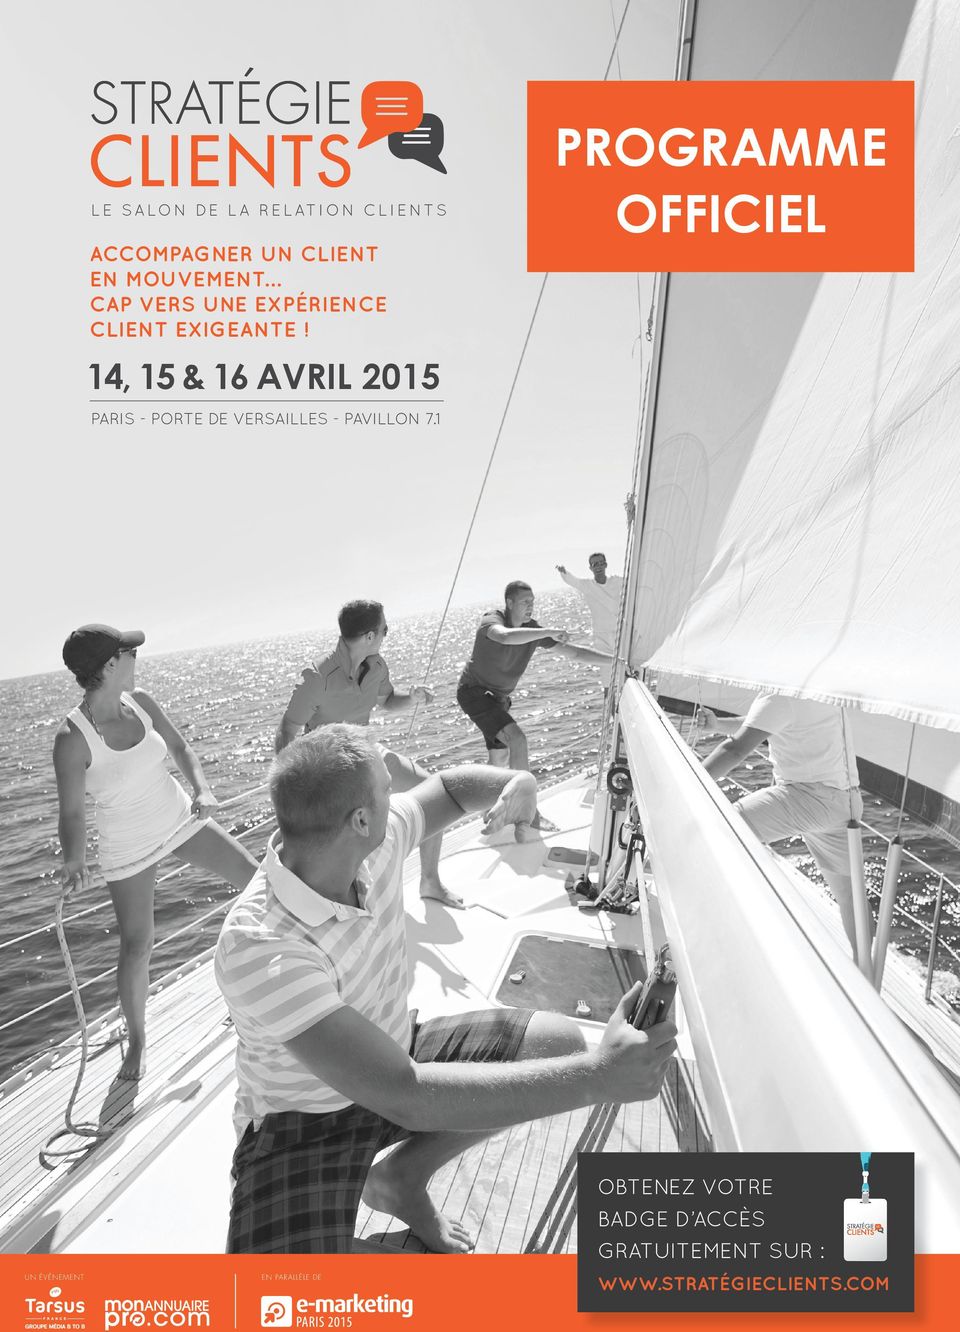 PROGRAMME OFFICIEL 14, 15 & 16 AVRIL 2015 PARIS - PORTE DE VERSAILLES -